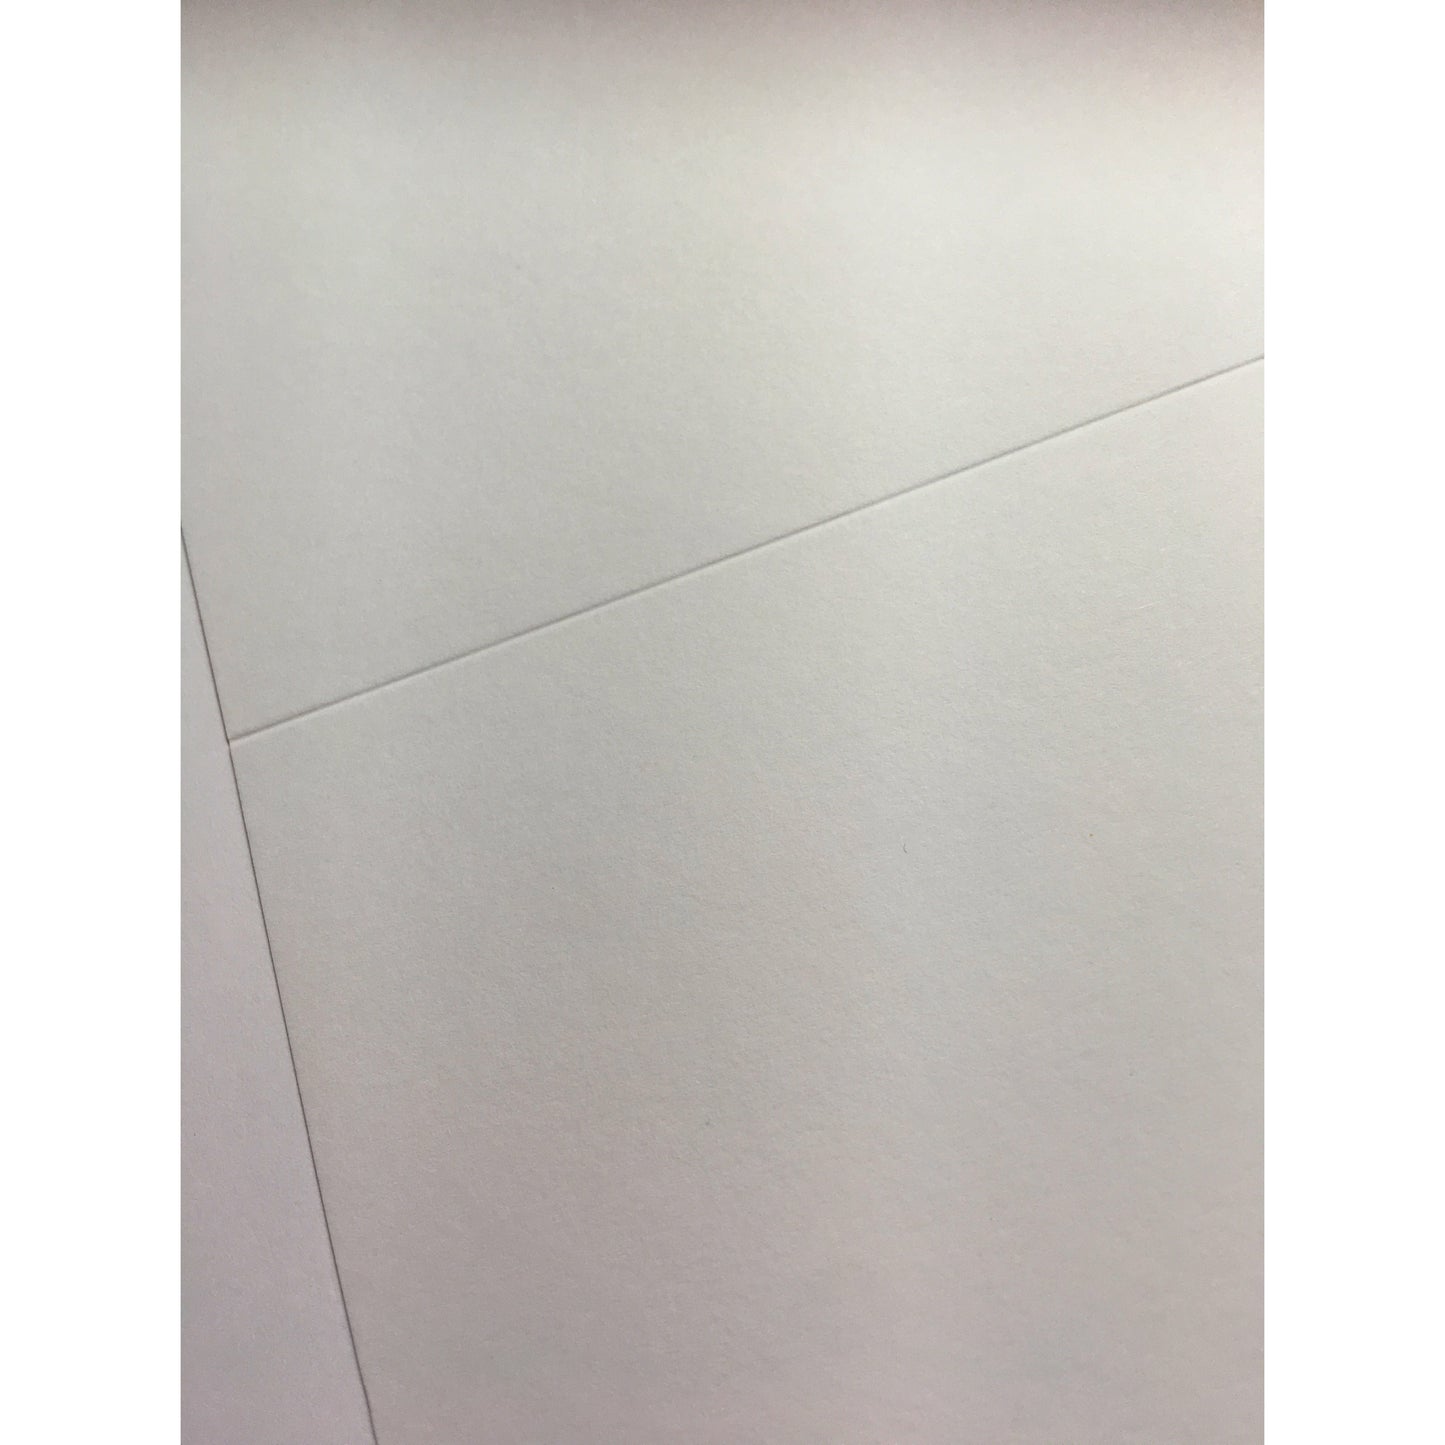 White Smooth Card & Envelopes  Various sizes